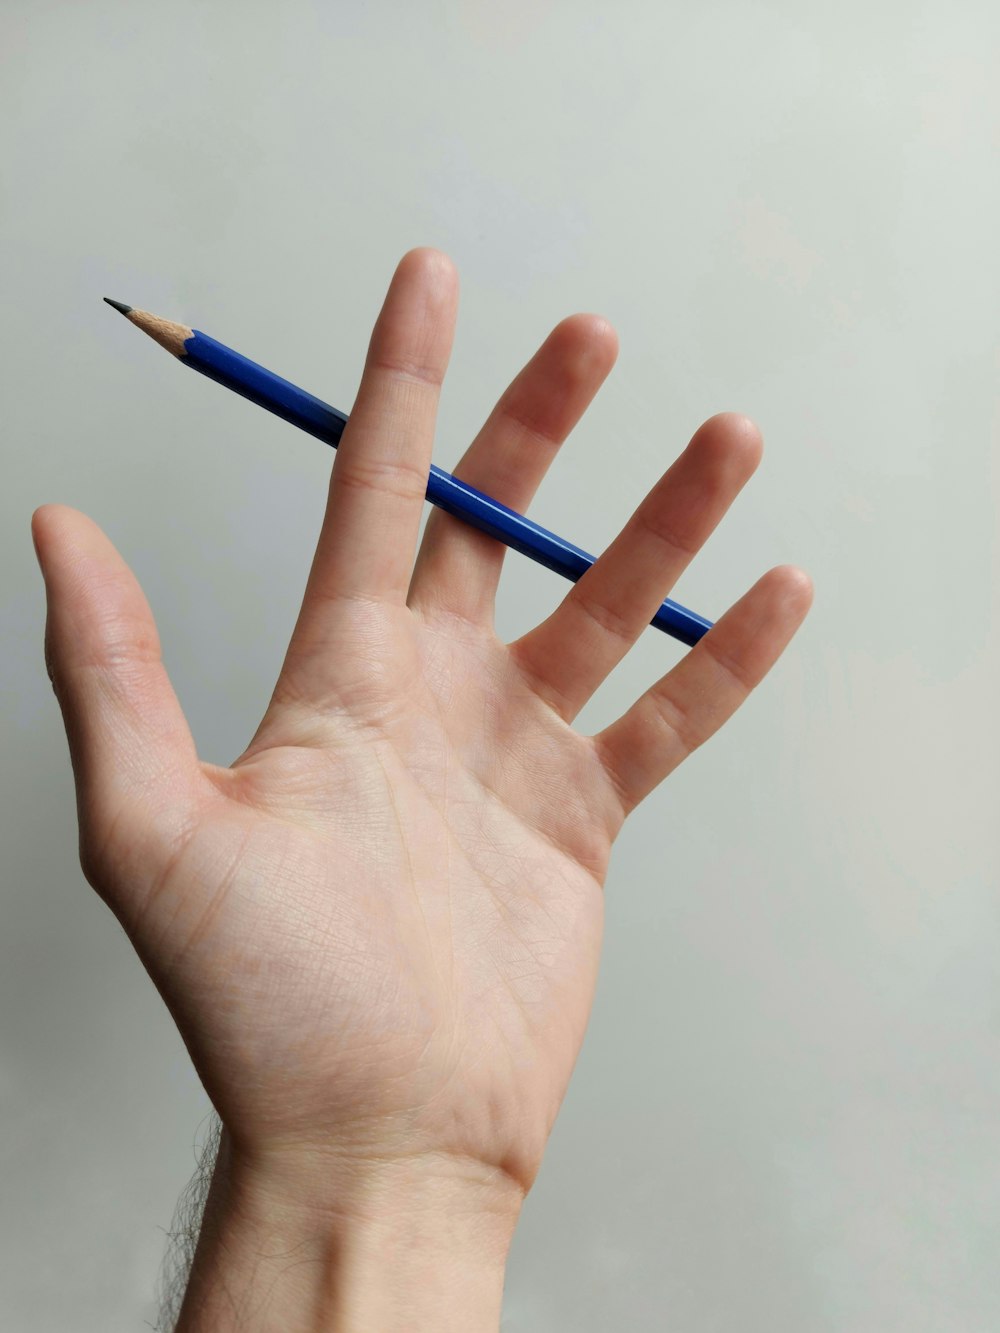 Persona sosteniendo un lápiz azul en la mano izquierda